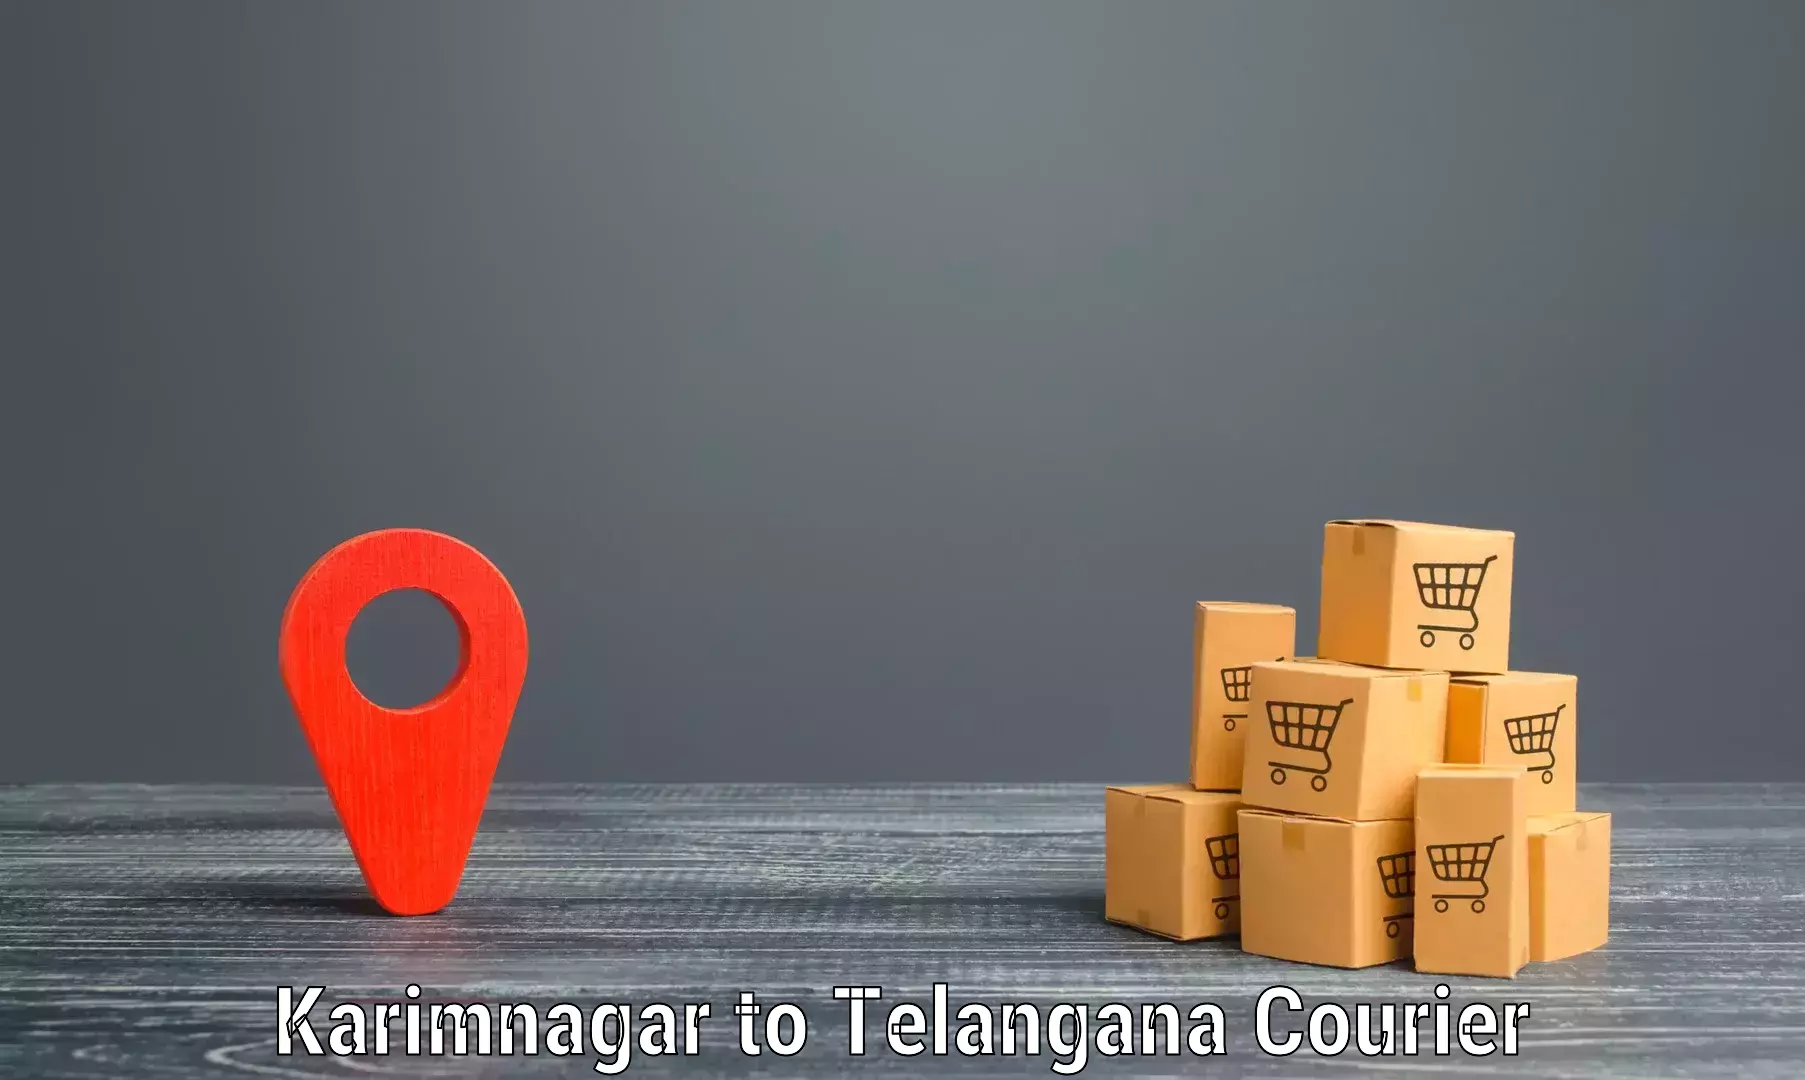 Easy access courier services Karimnagar to Manneguda